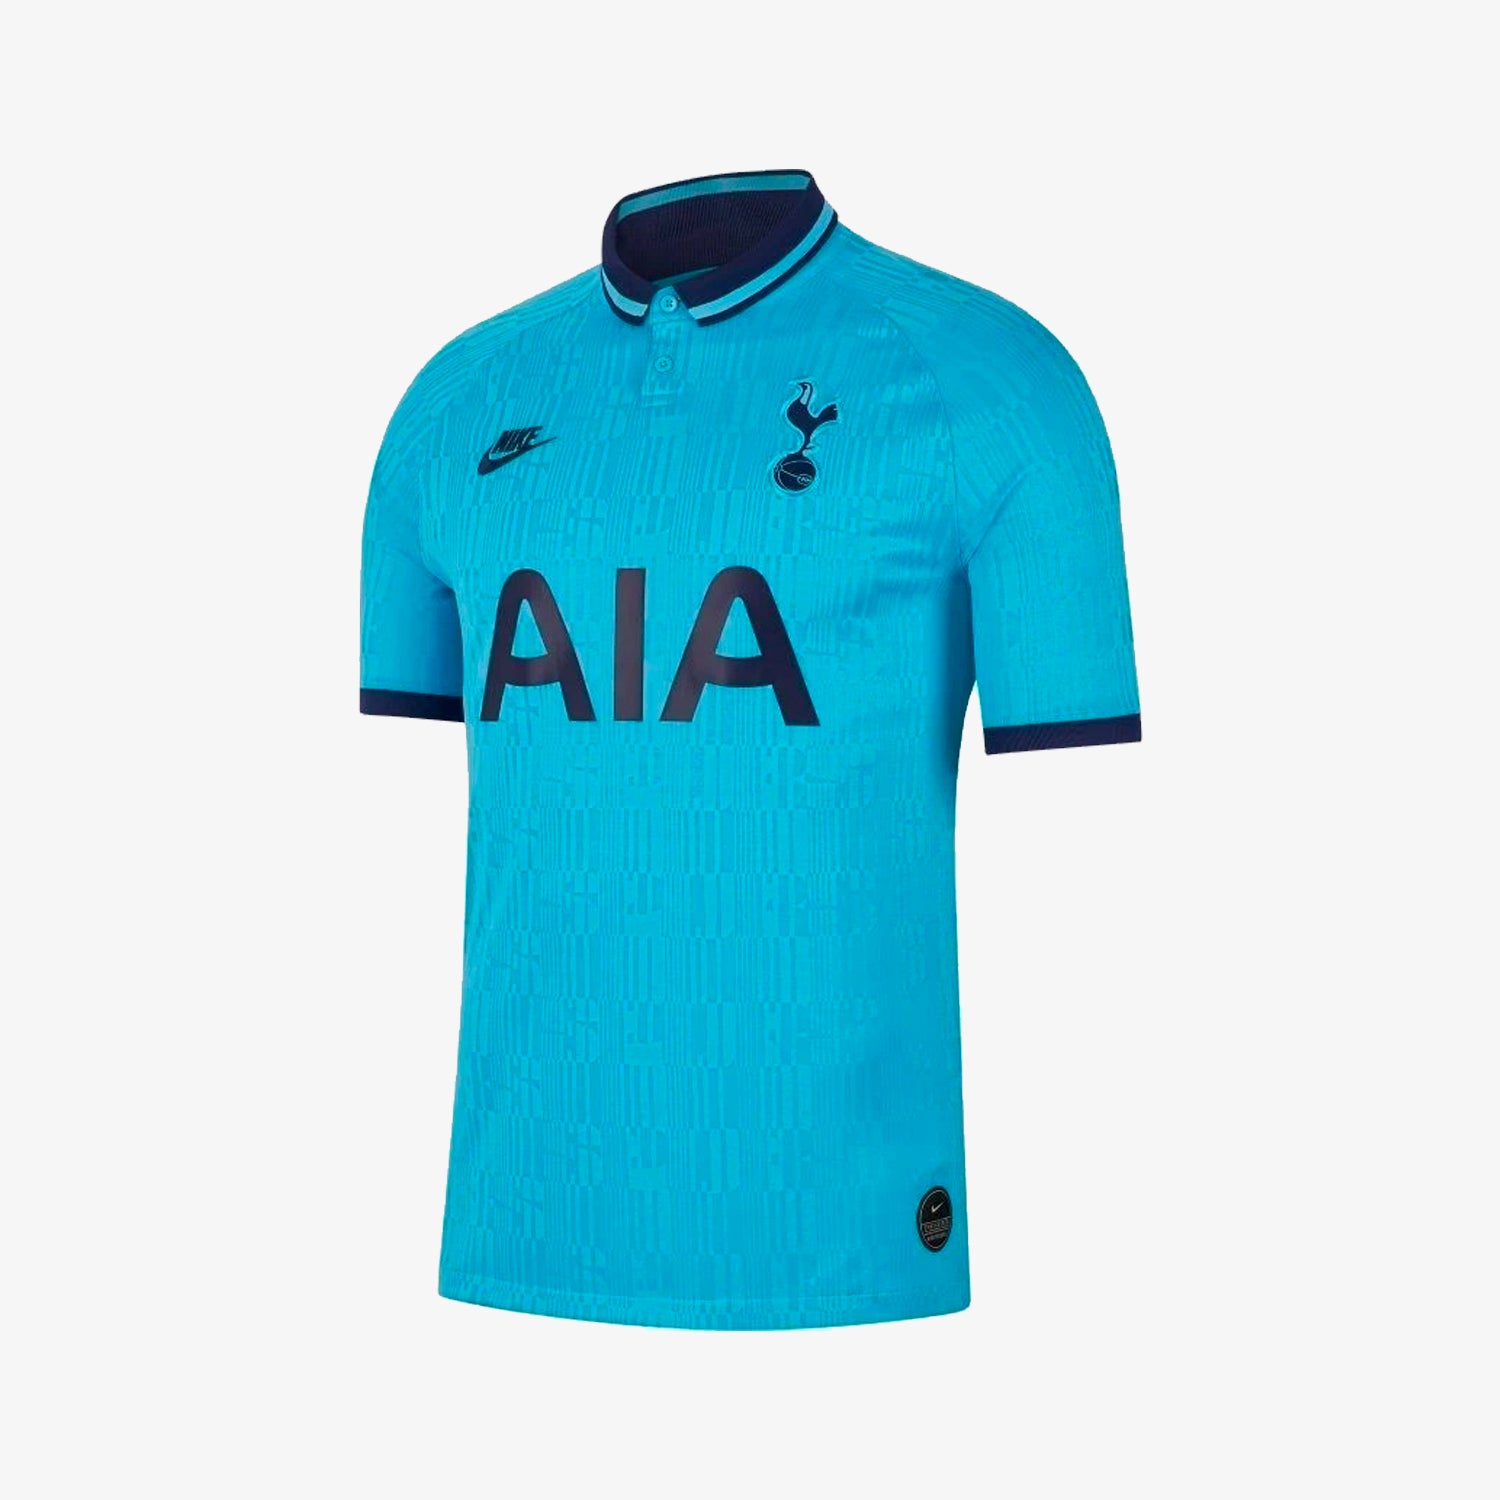 Tottenham 19/20 soccer jerseys, official printing, sleeve badges